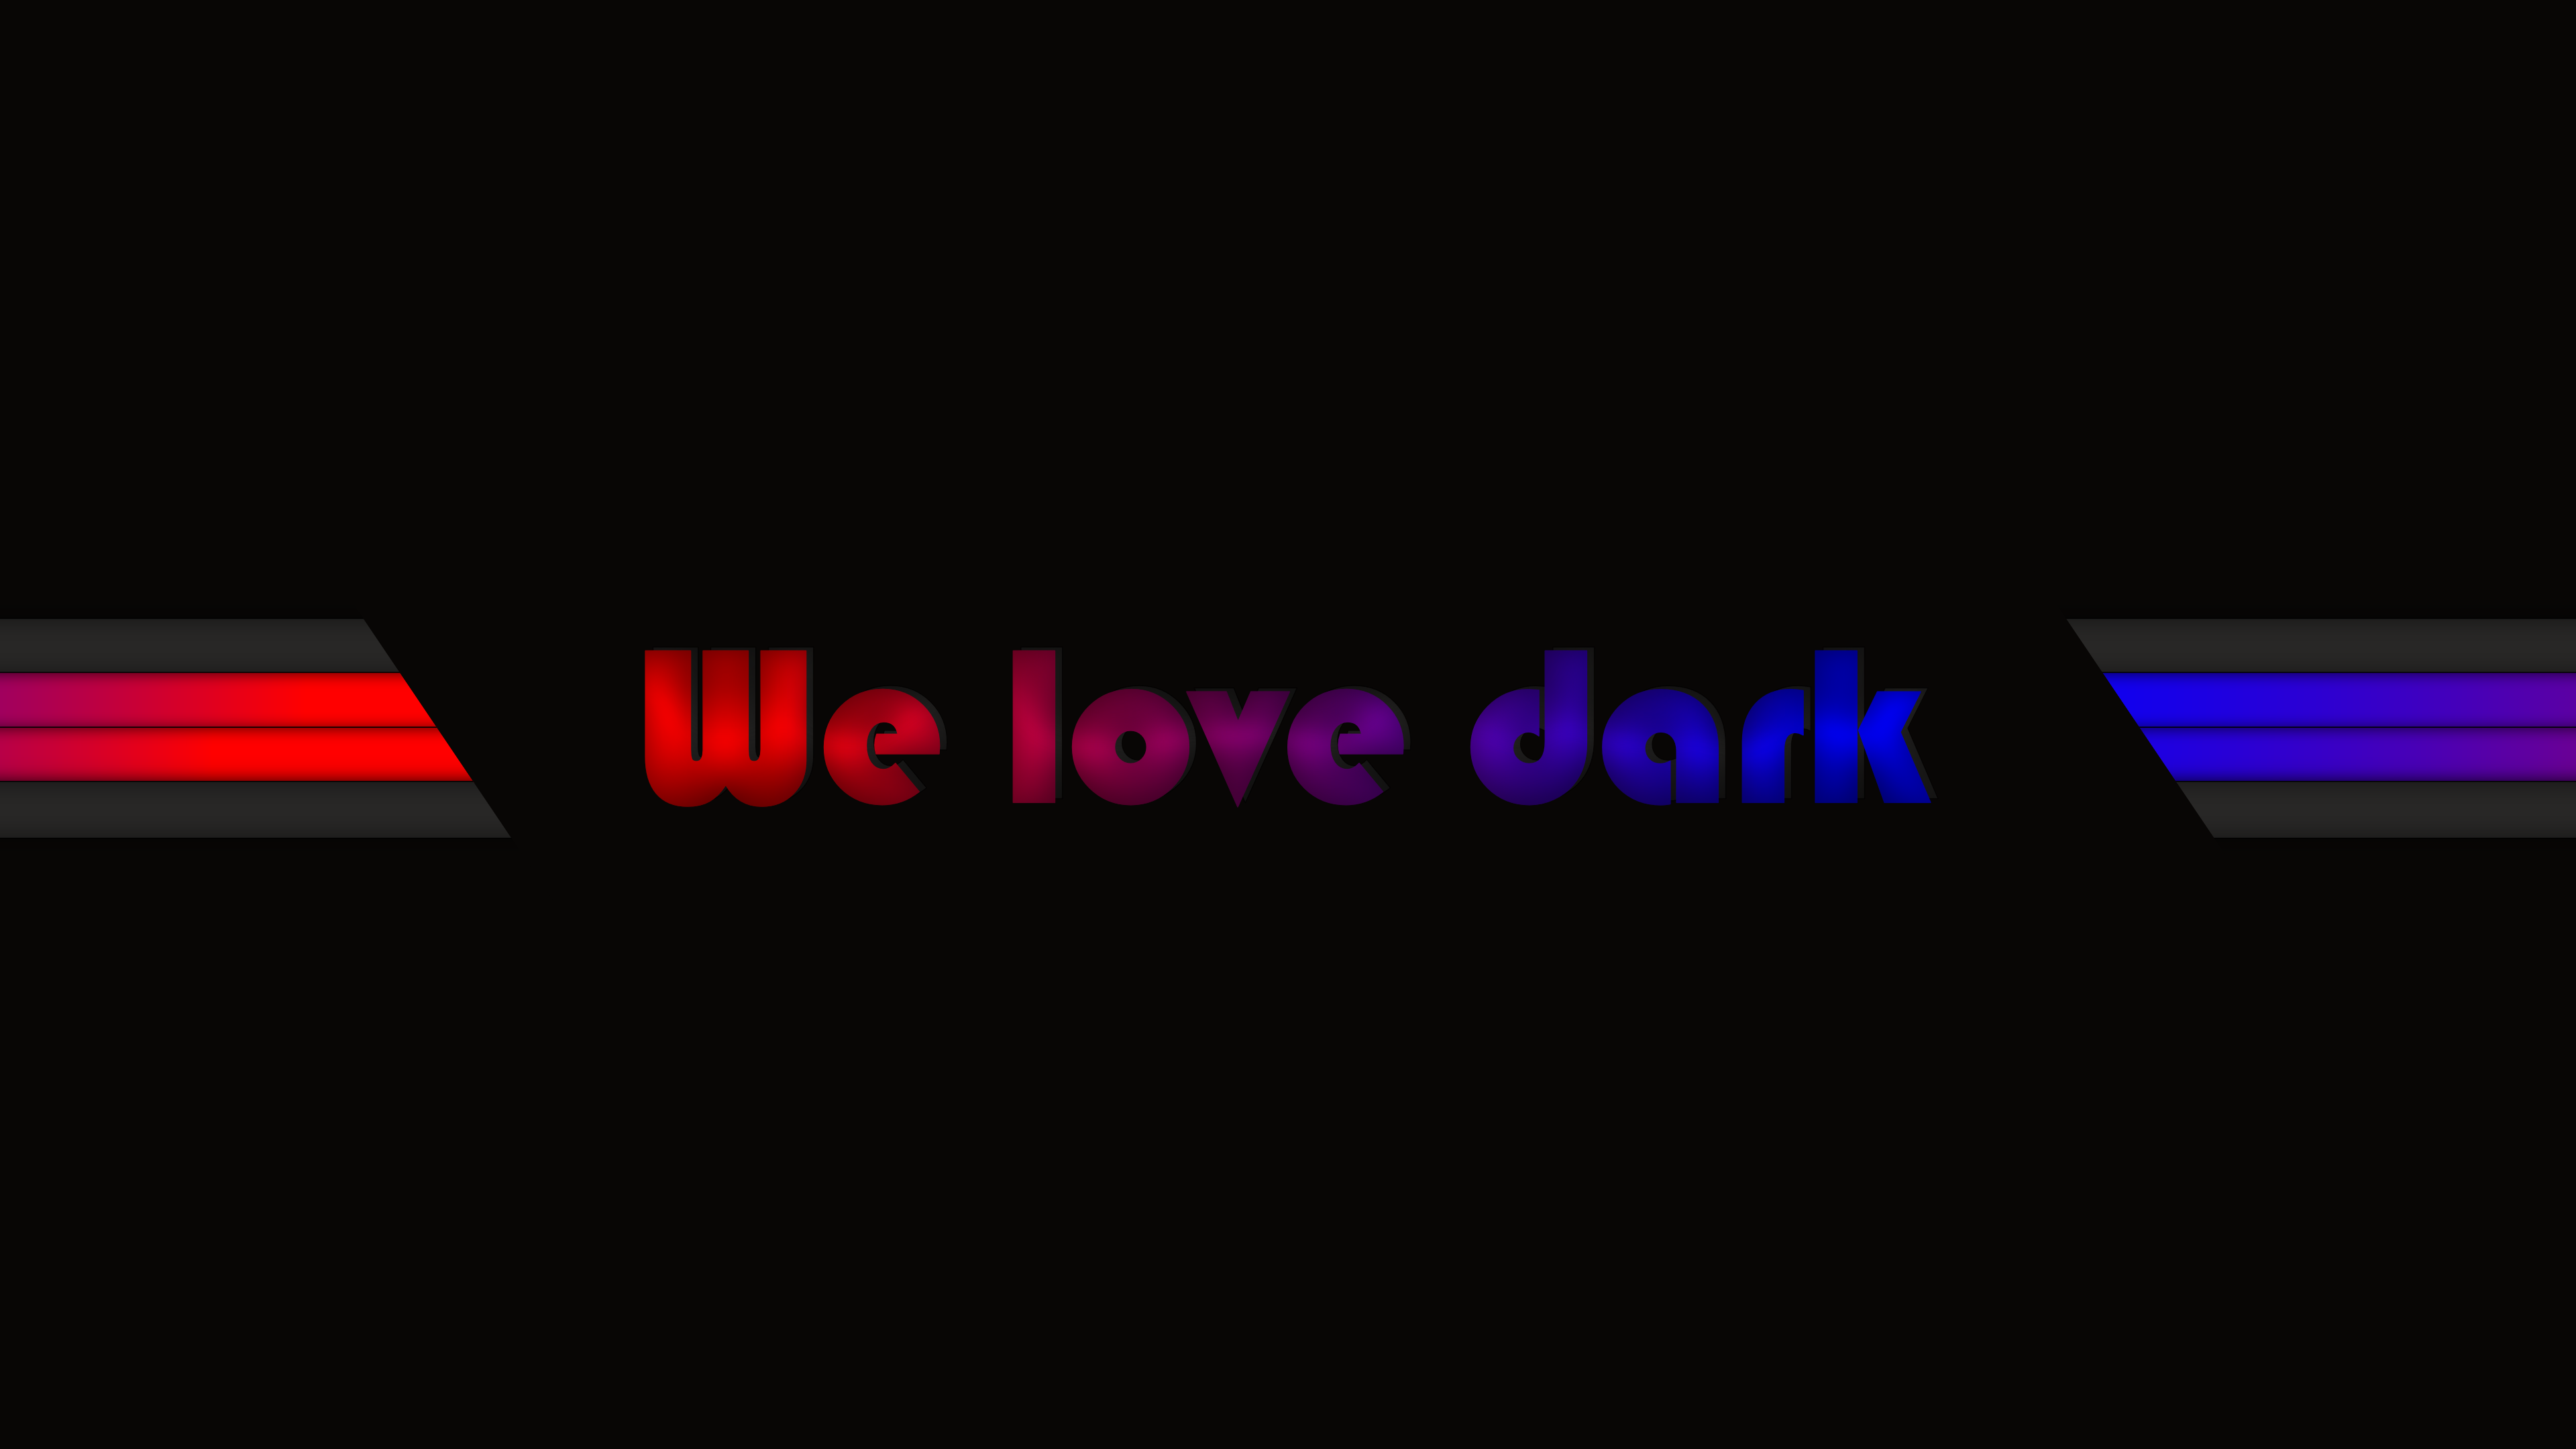 Dark Welovedark Faded Bars Black Gradient Minimalism 3840x2160